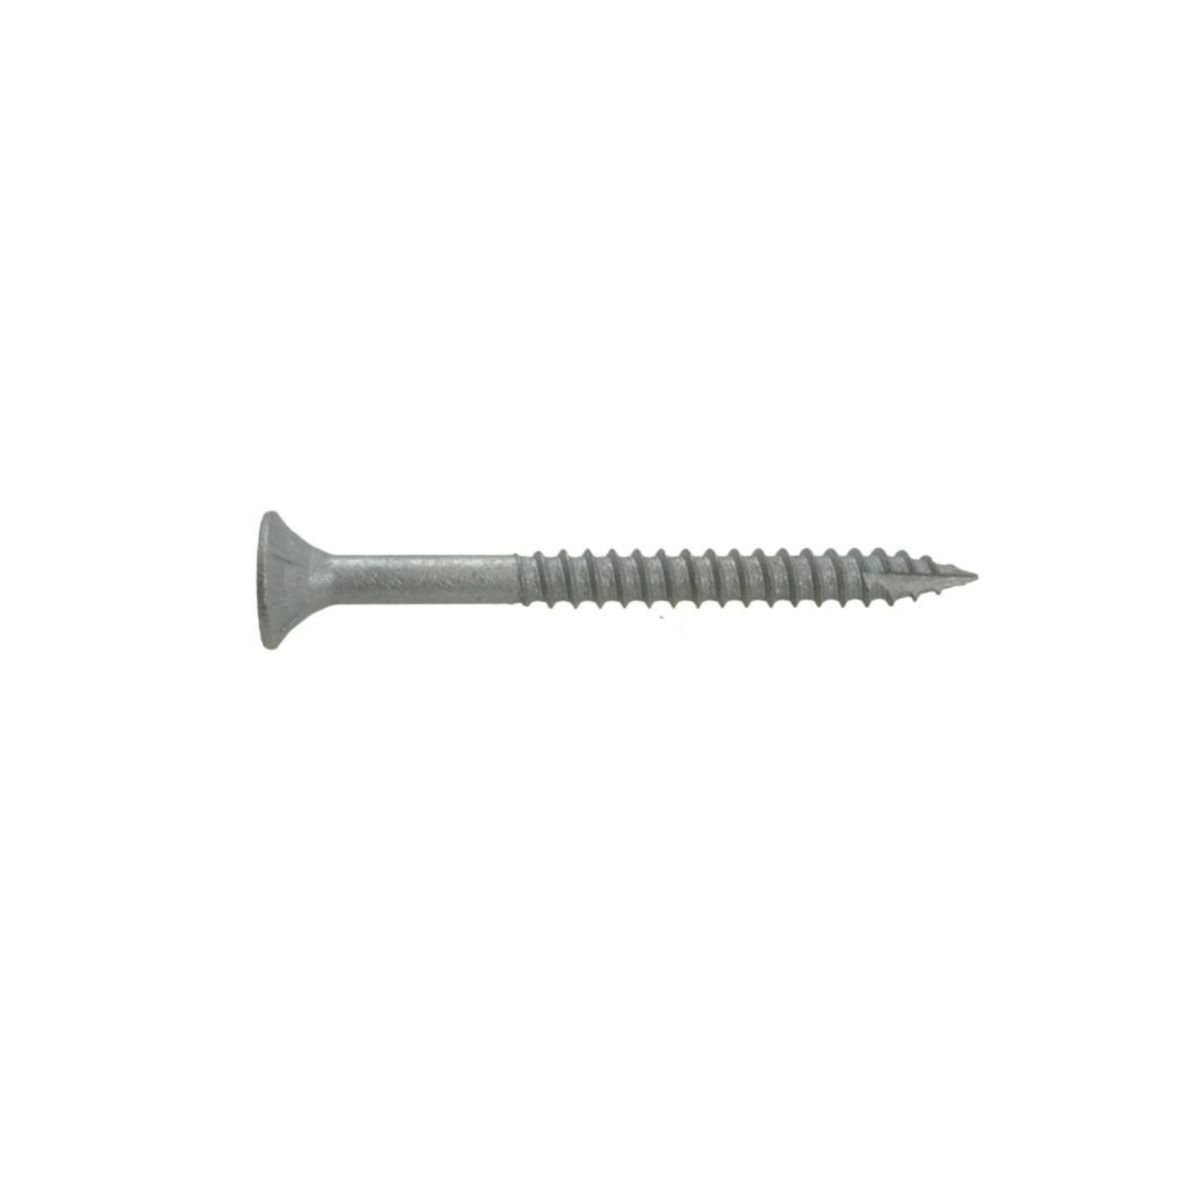 Intex MegaFix® Nails Batten Screw 65 x 3.75 x 2.5kg